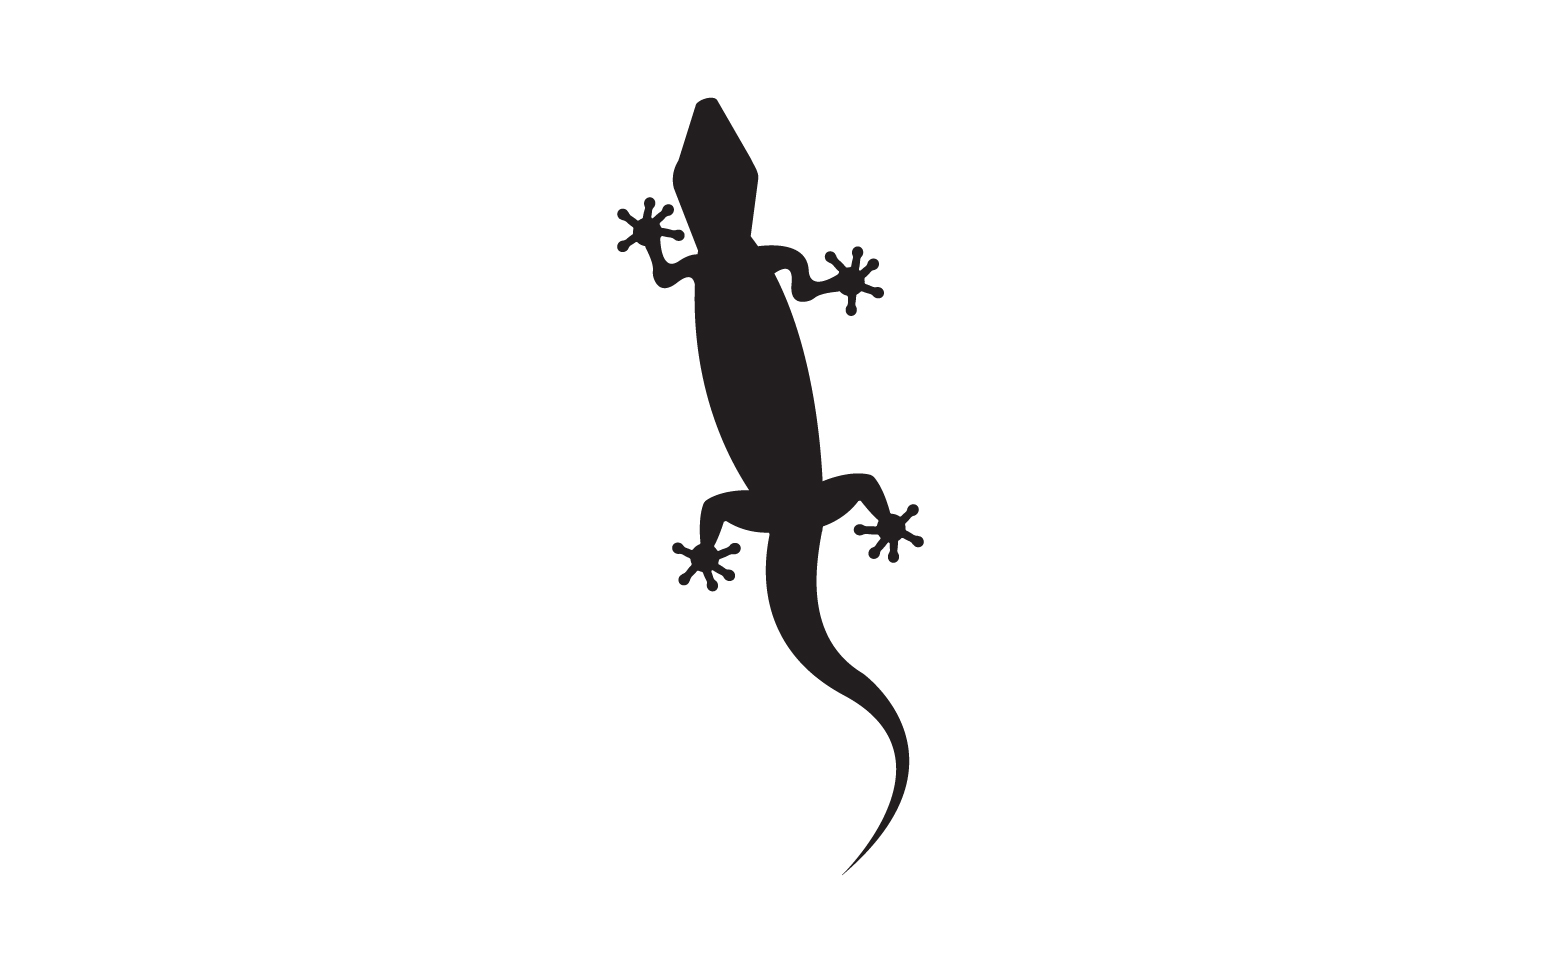 Lizard chameleon home lizard logo v22